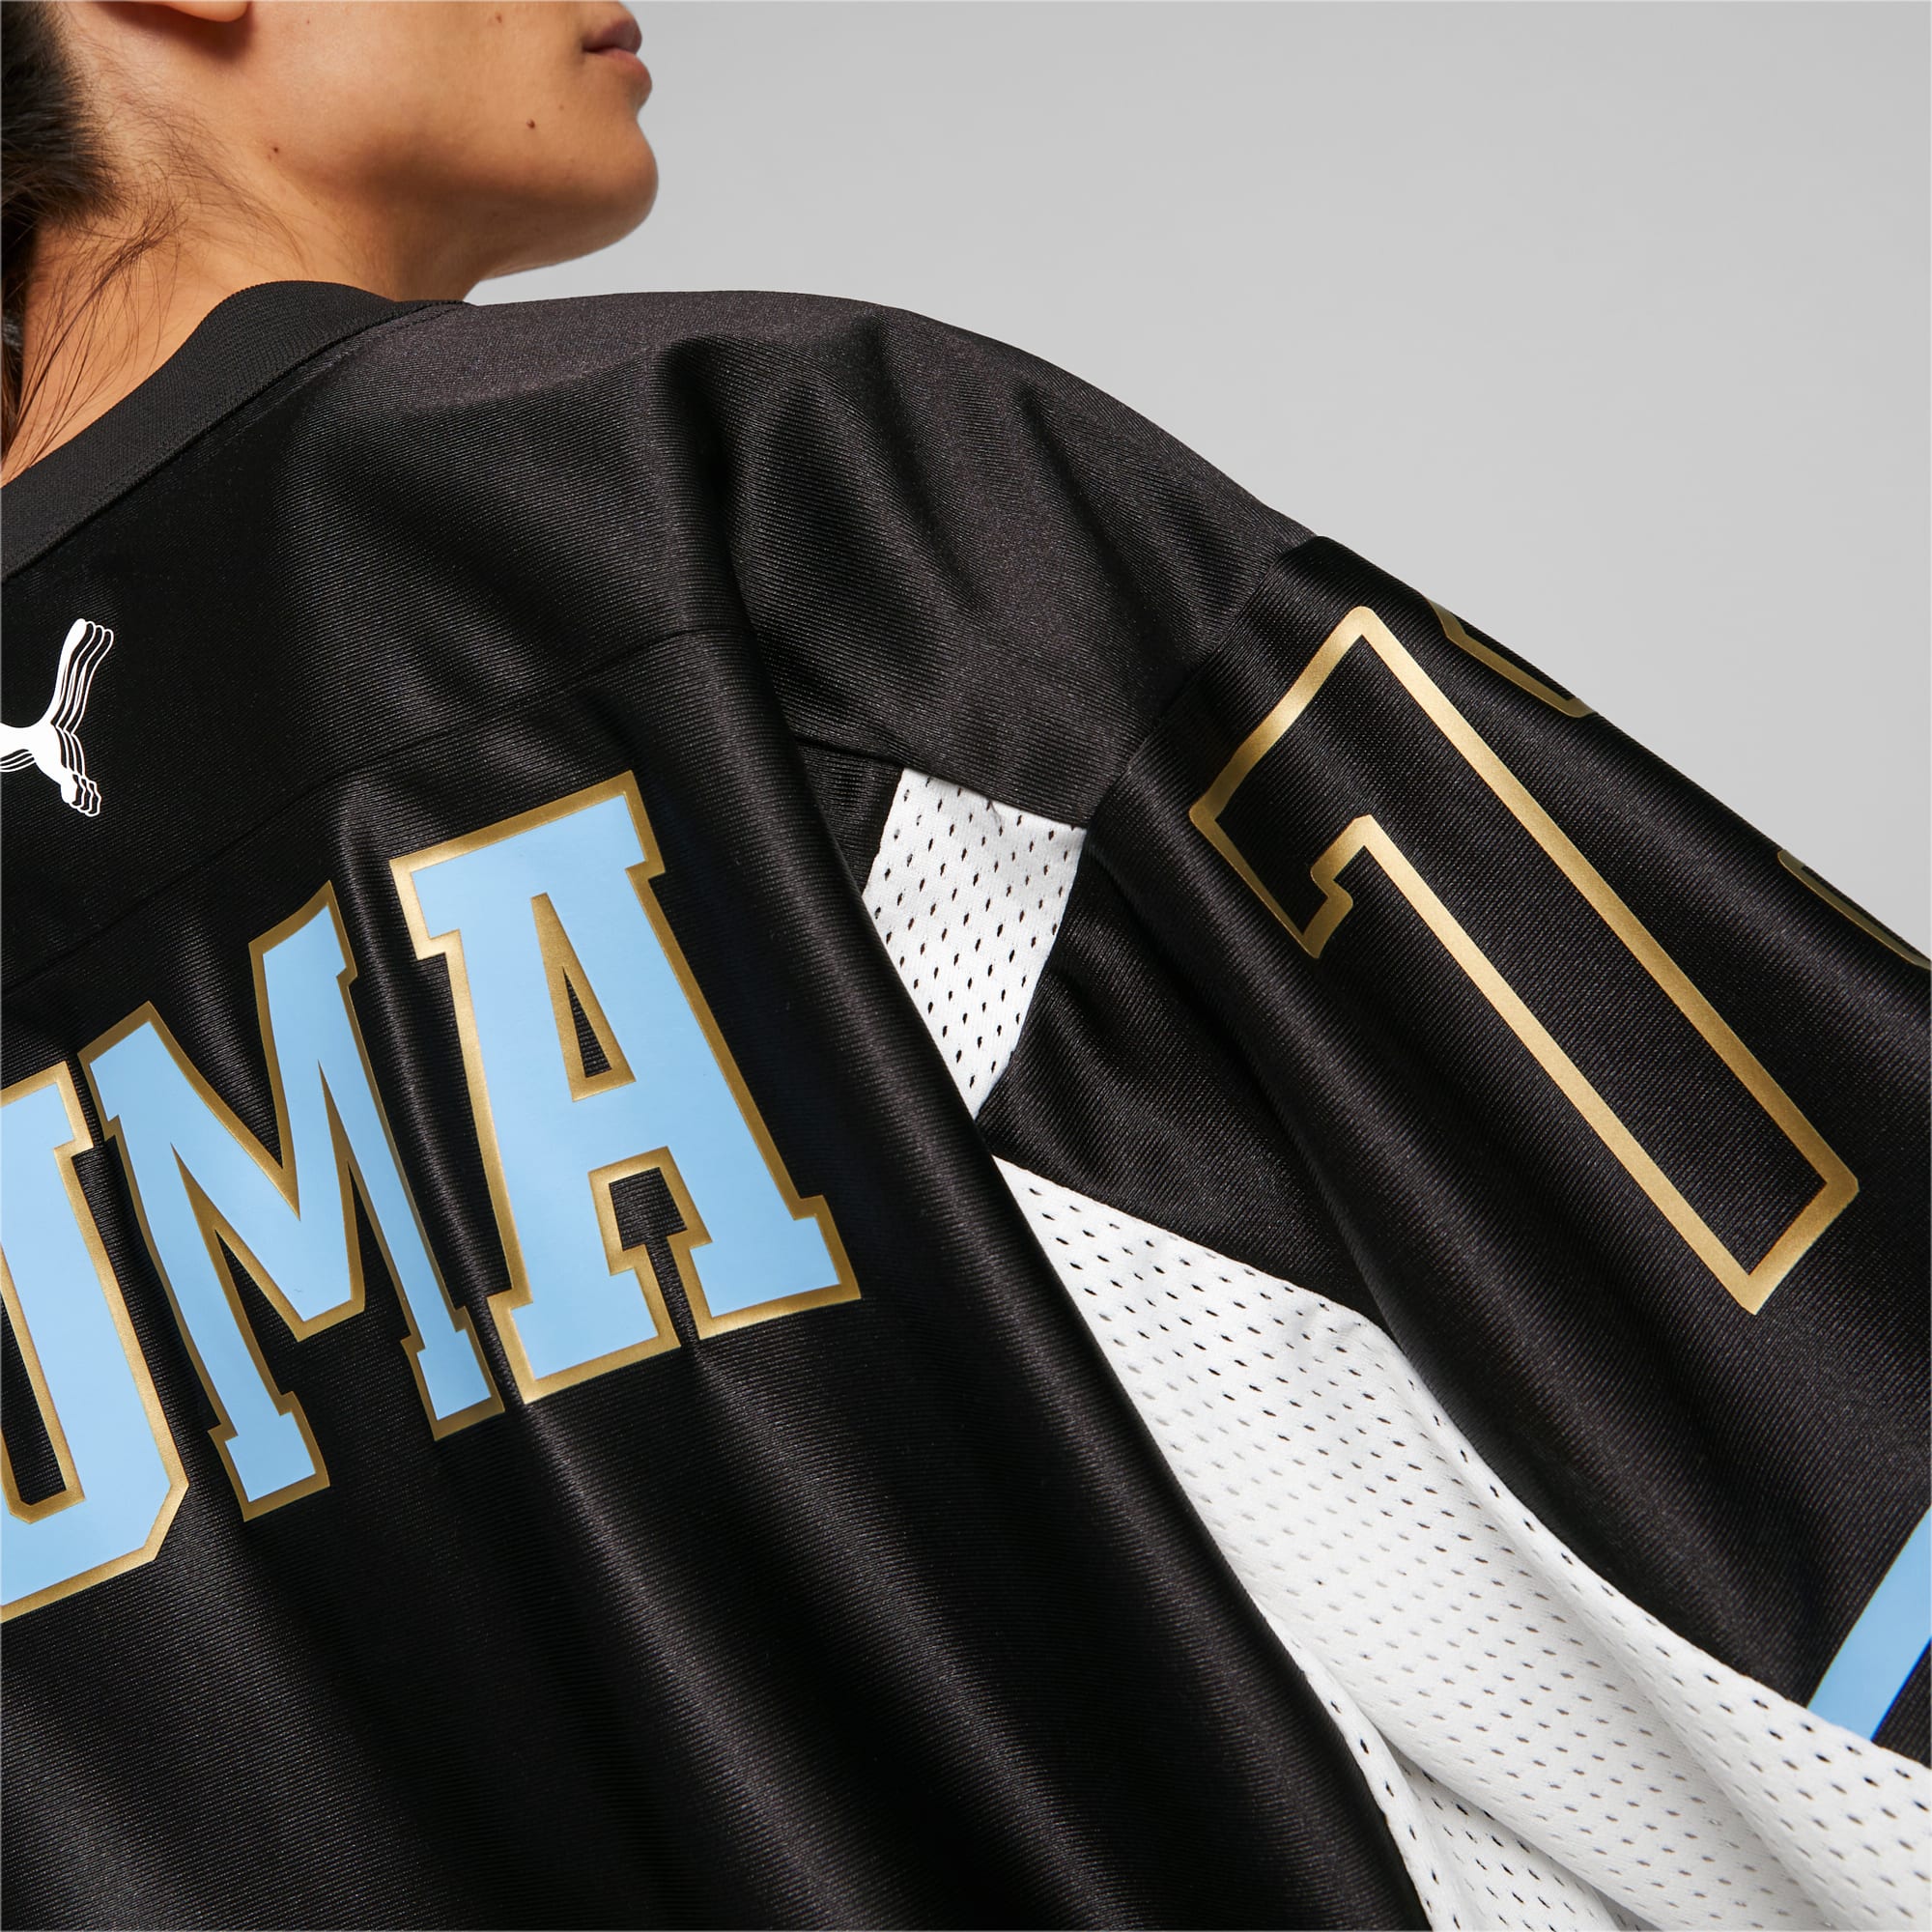 PUMA Gold Standard Basketbalshirt Voor Dames, Wit/Zwart